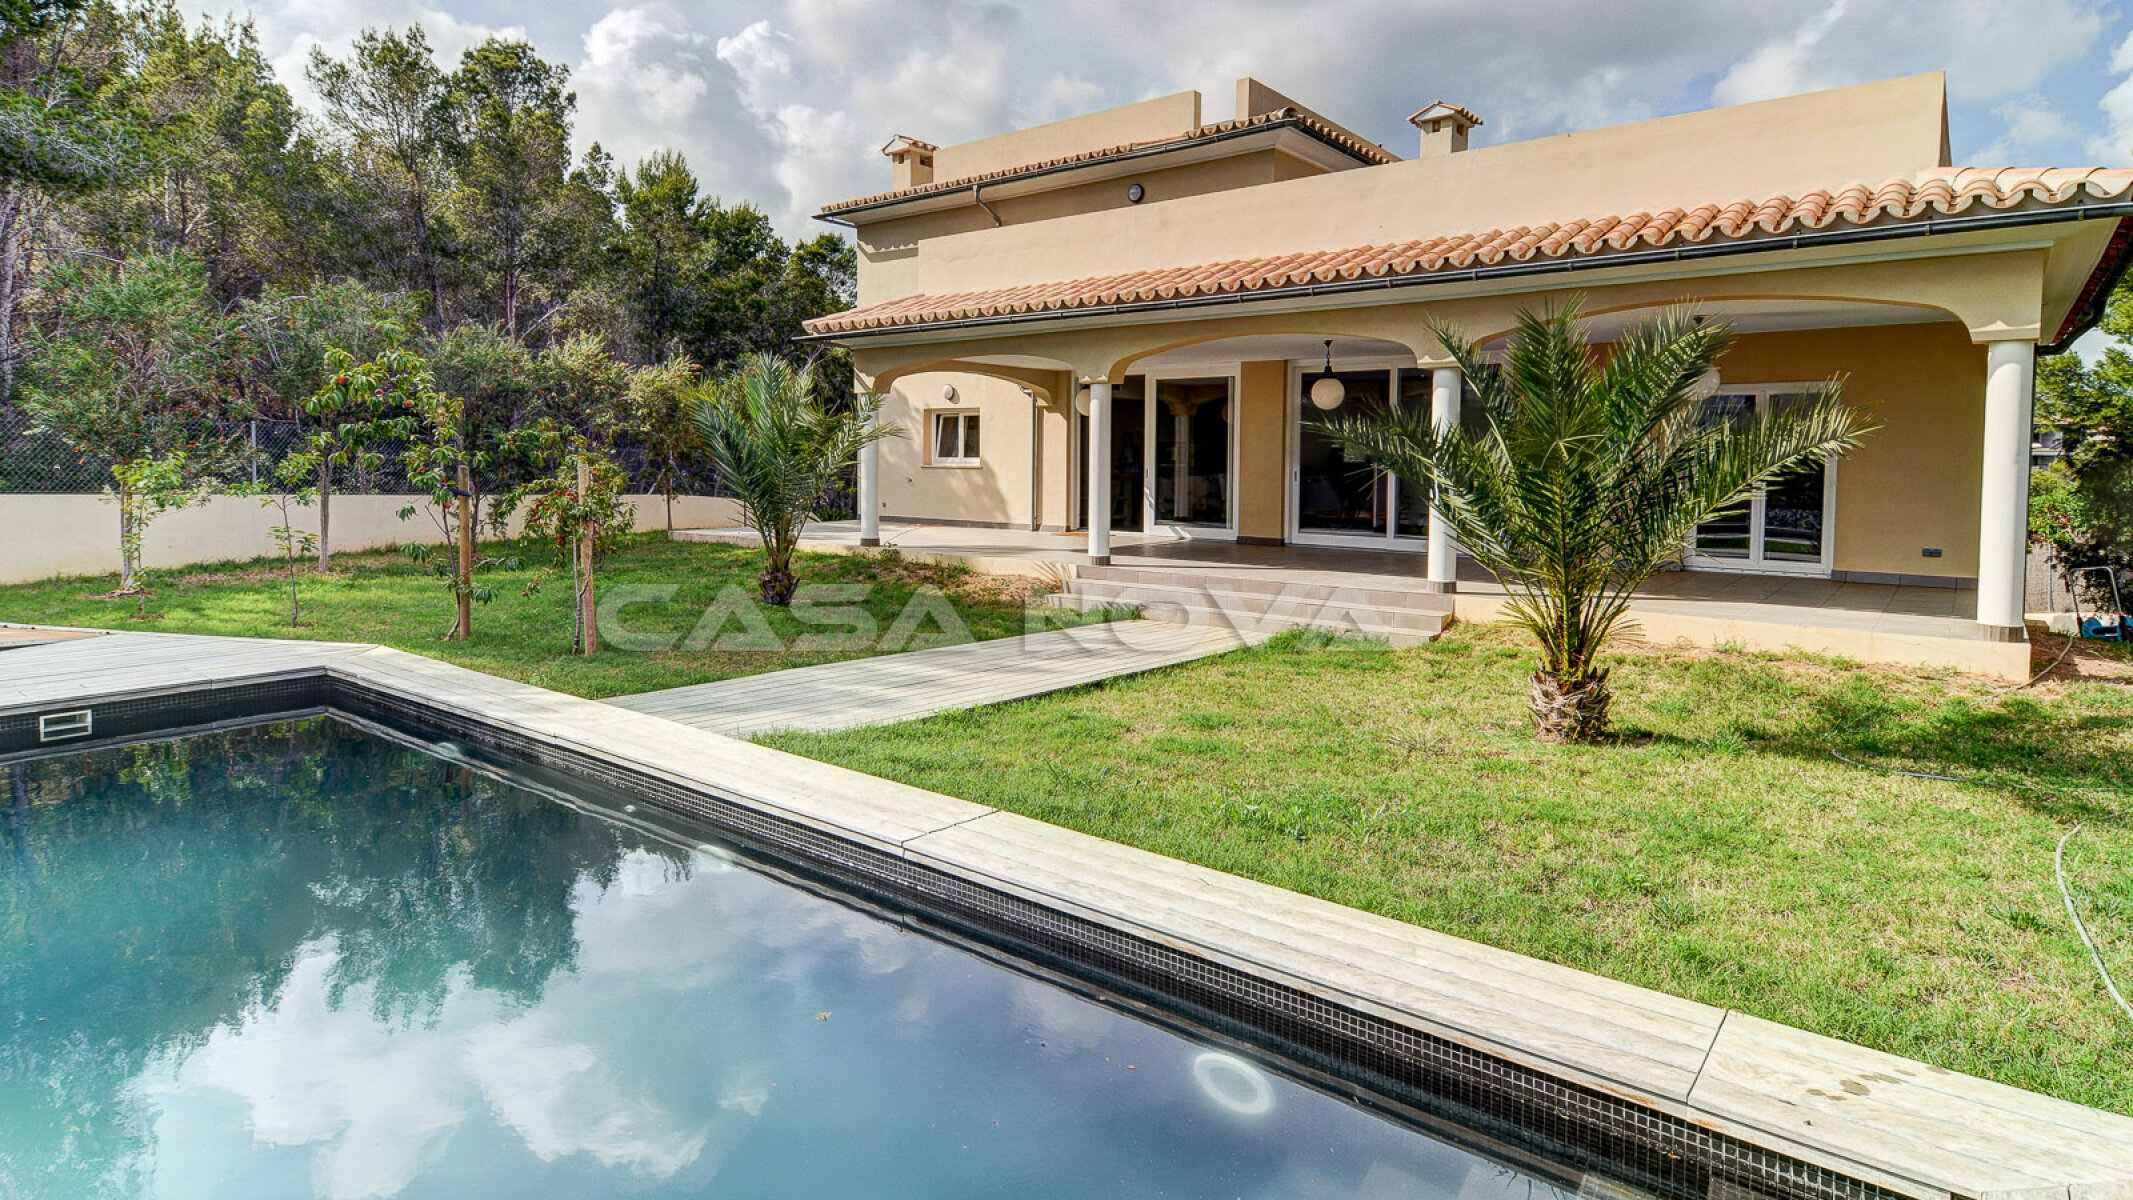 Traumhafter, sehr gepflegter Garten mit Pool der Mallorca Villa